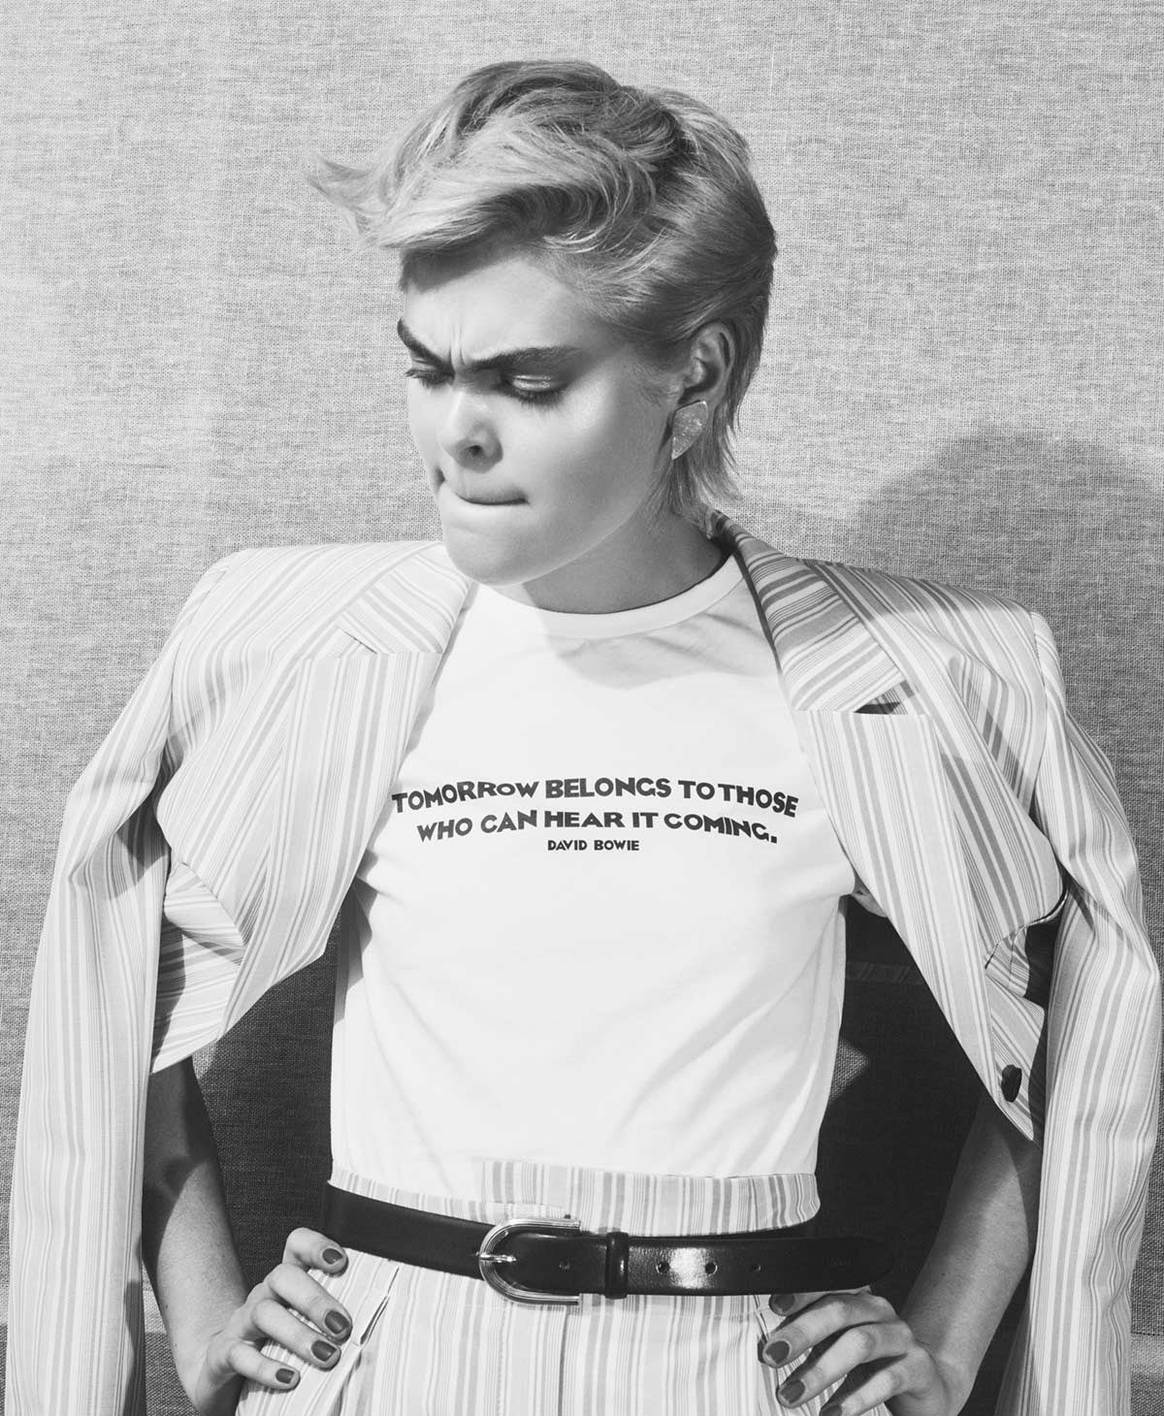 Hugo Boss rinde tributo a David Bowie con una colección cápsula